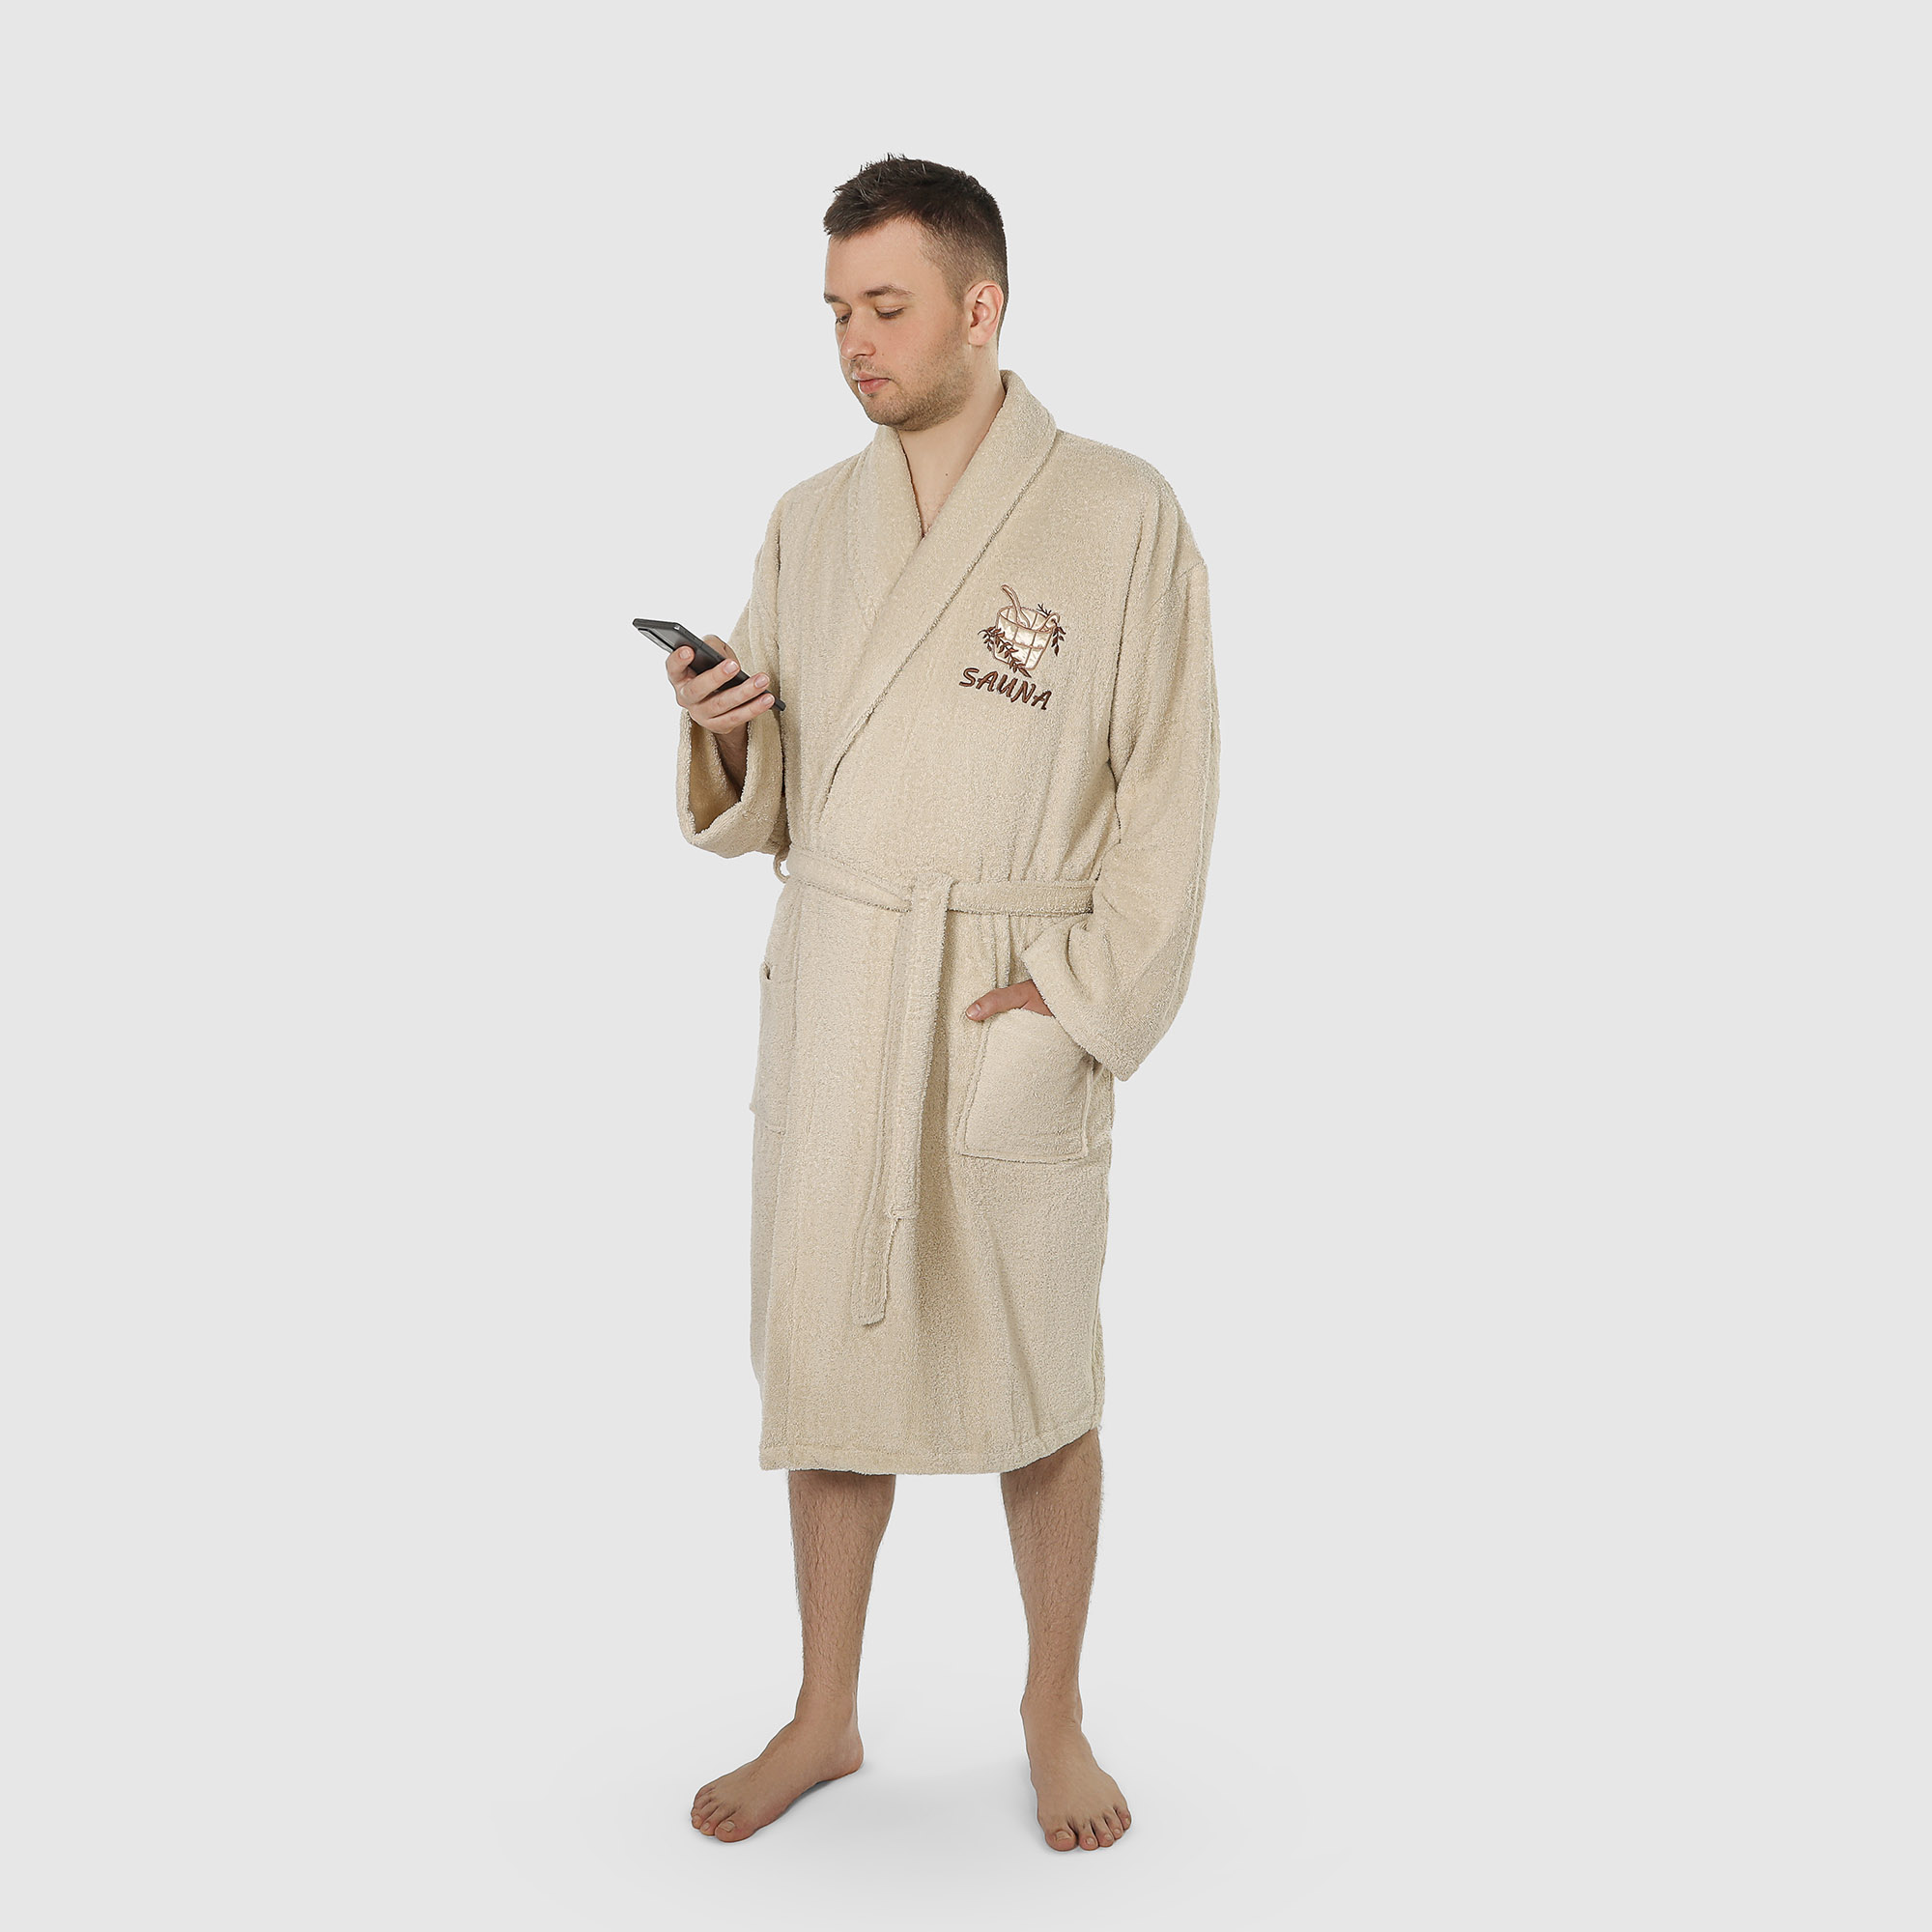 Халат мужской махровый с воротником Asil sauna brown xxxl халат мужской asil sauna kimono brown xl вафельный